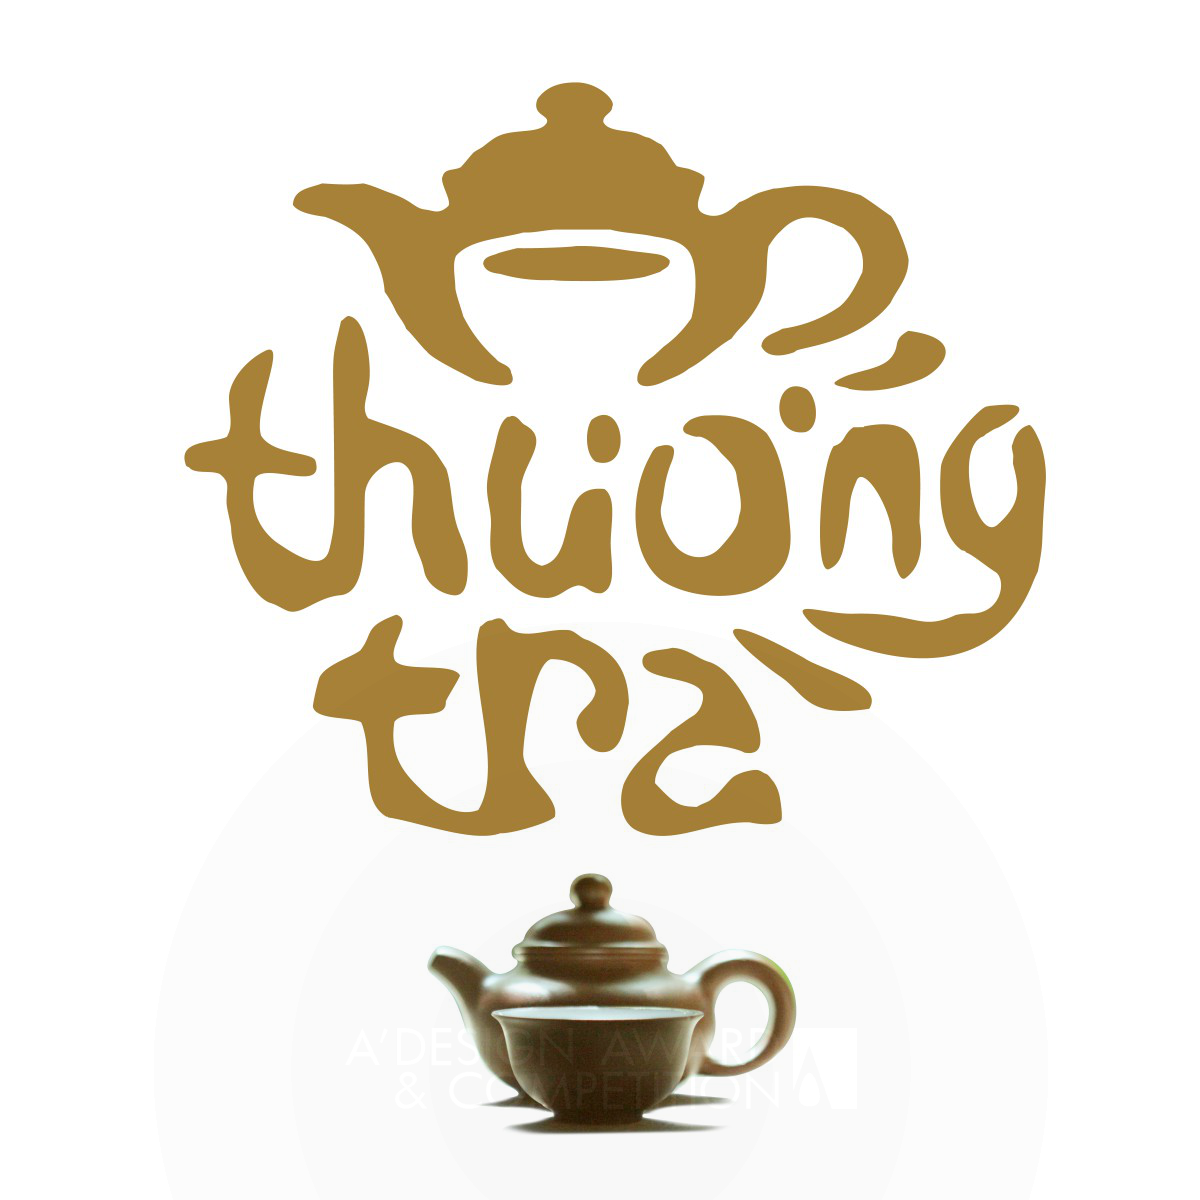 Thuong Tra Premium Tea Logo by Hiep Ha Dung